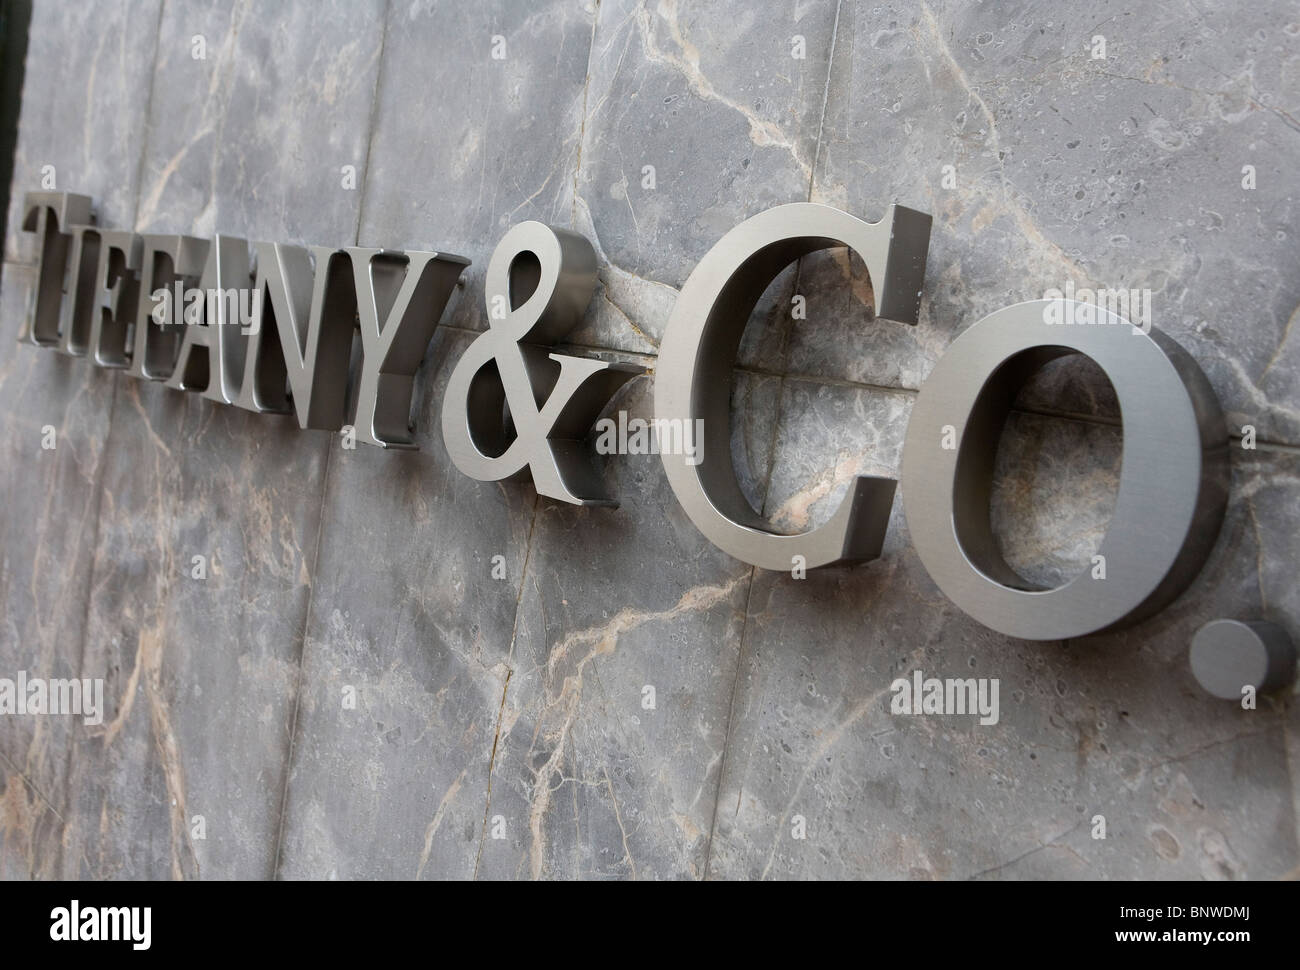 A Tiffany & Company retail store Stock Photo - Alamy